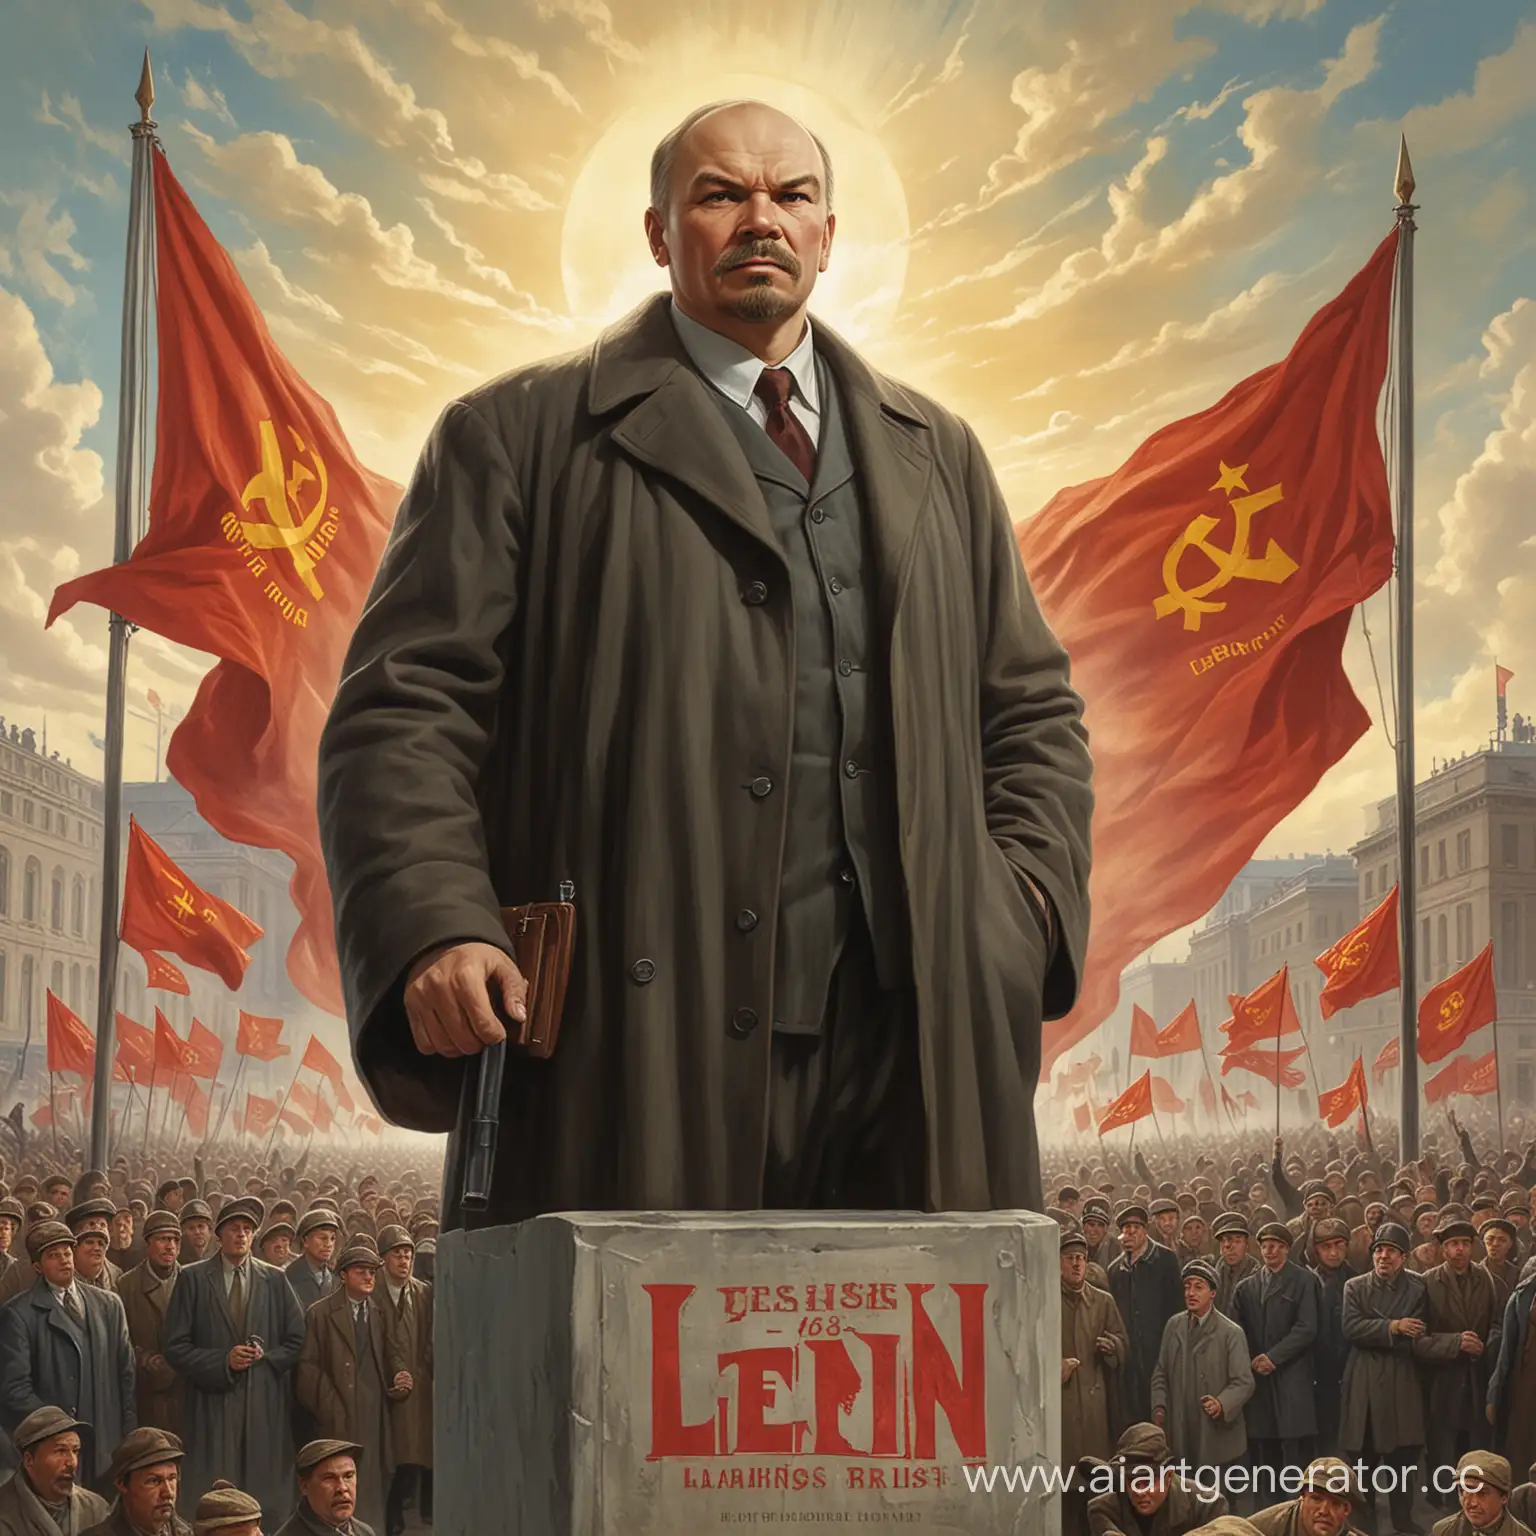 Lenin has risen